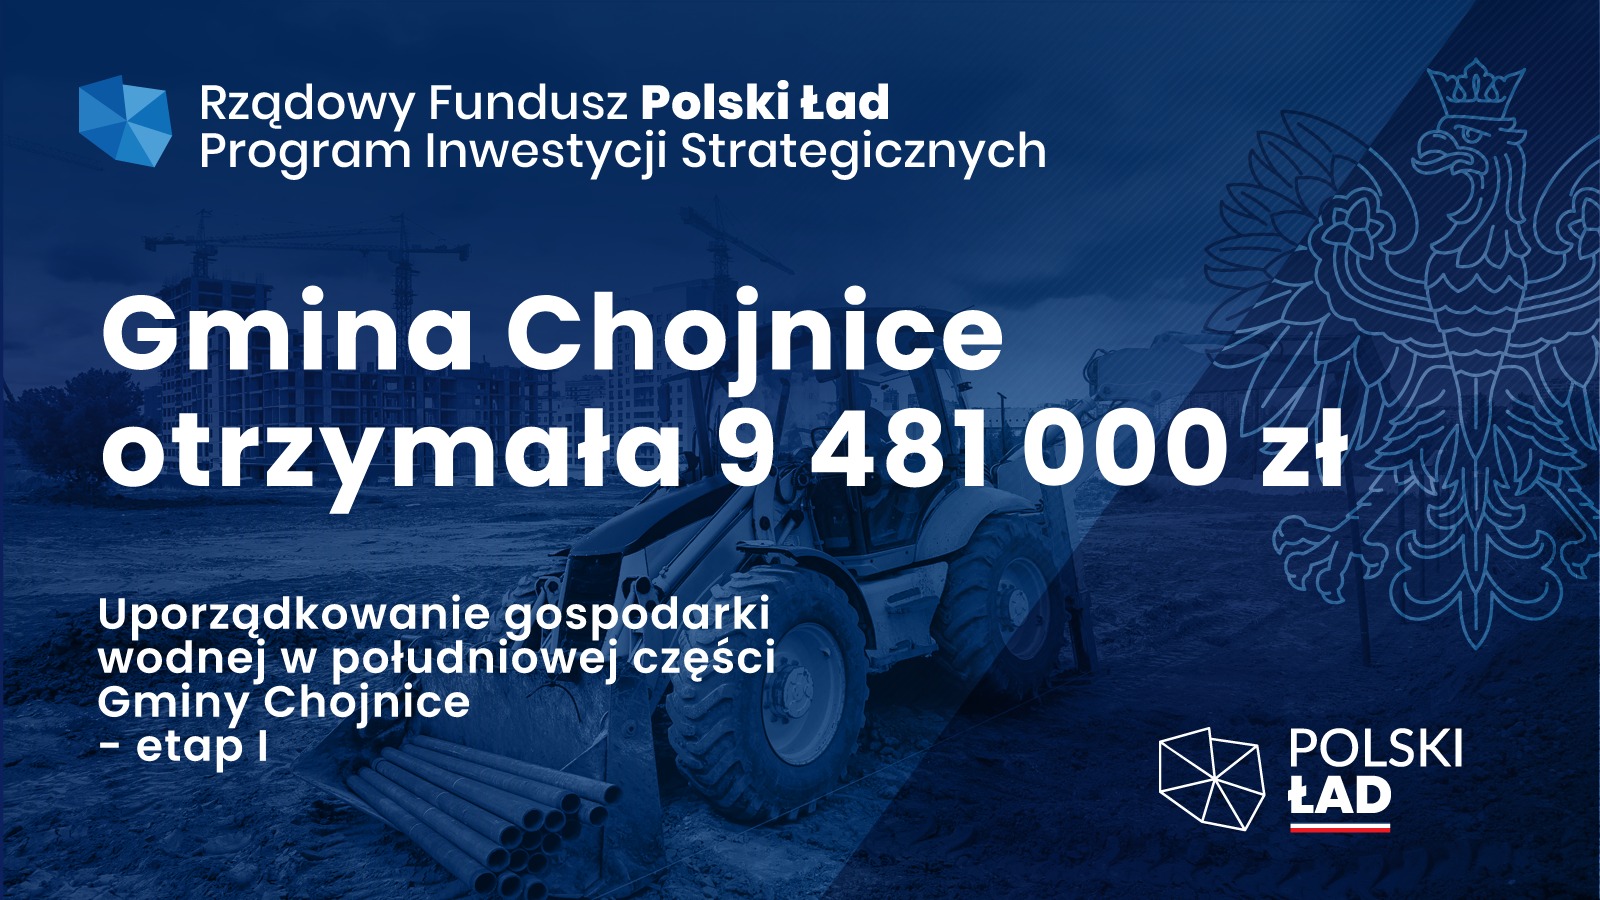 Plakat informujący o dofinansowaniu inwestycji Gminy Chojnice "Uporządkowanie gospodarki wodnej w południowej części Gminy Chojnice - etap I" w ramach Rządowego Funduszu Polski Ład: Program Inwestycji Strategicznych